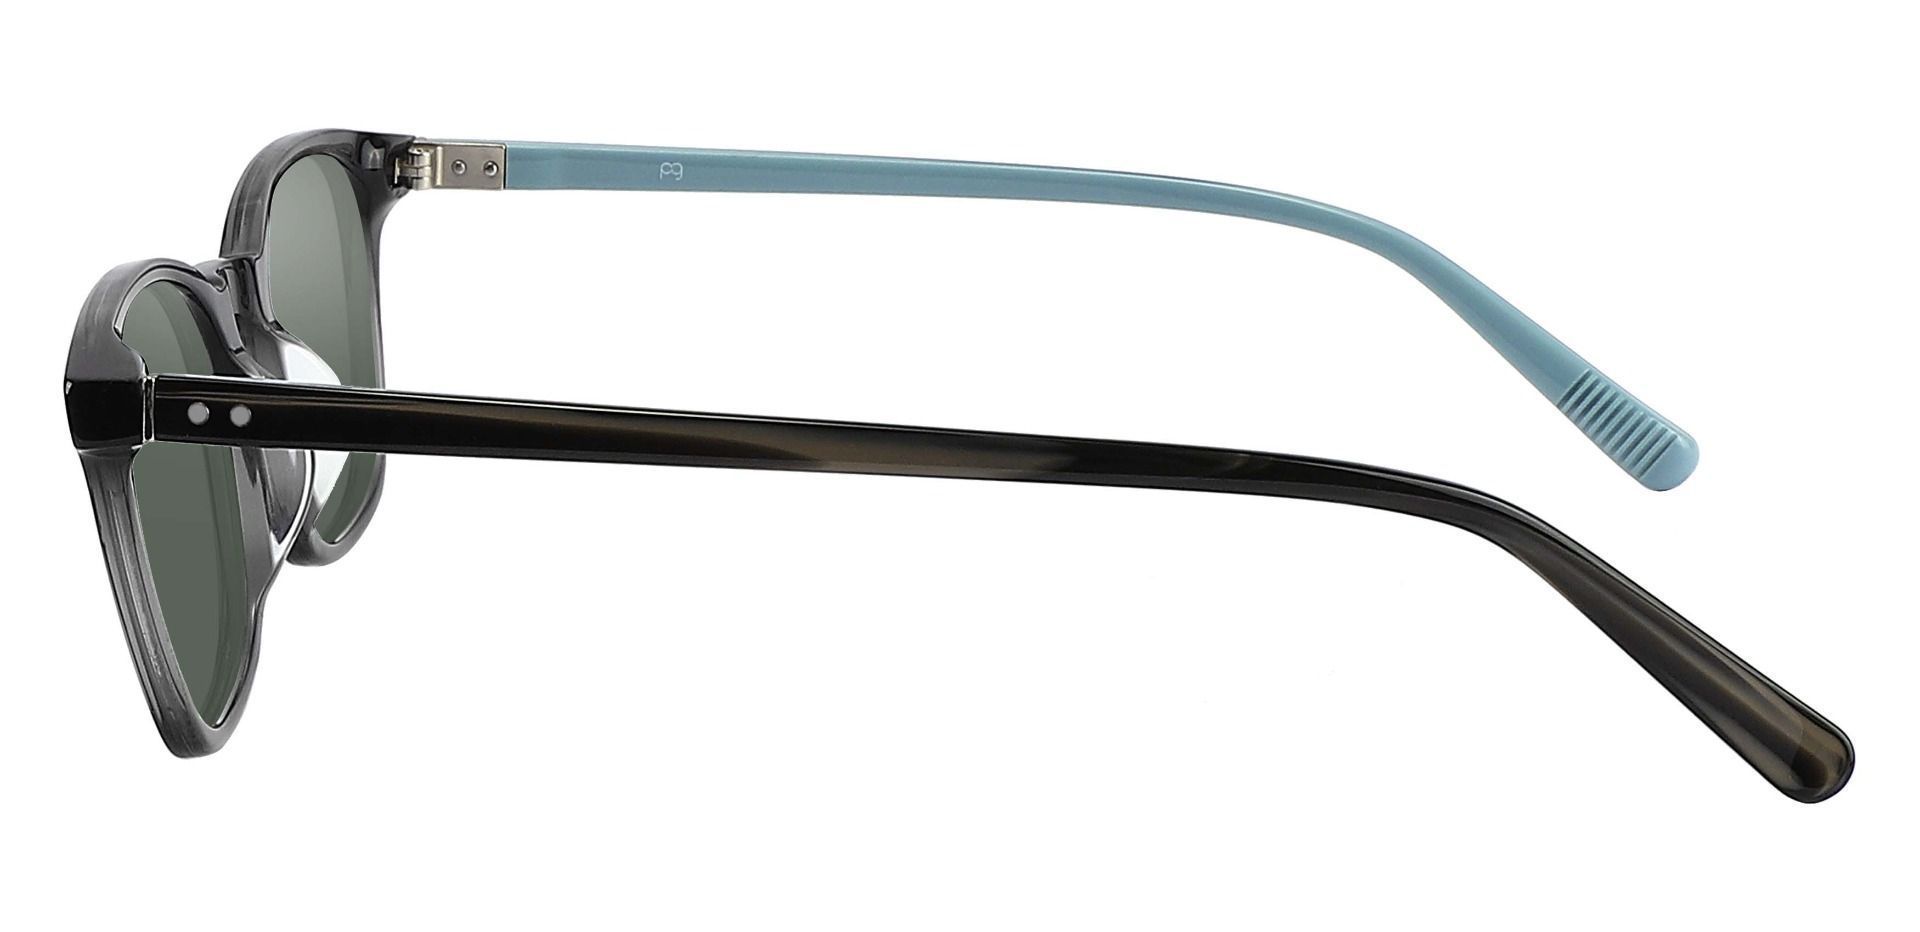 Alonzo Square Prescription Sunglasses - Gray Frame With Green Lenses